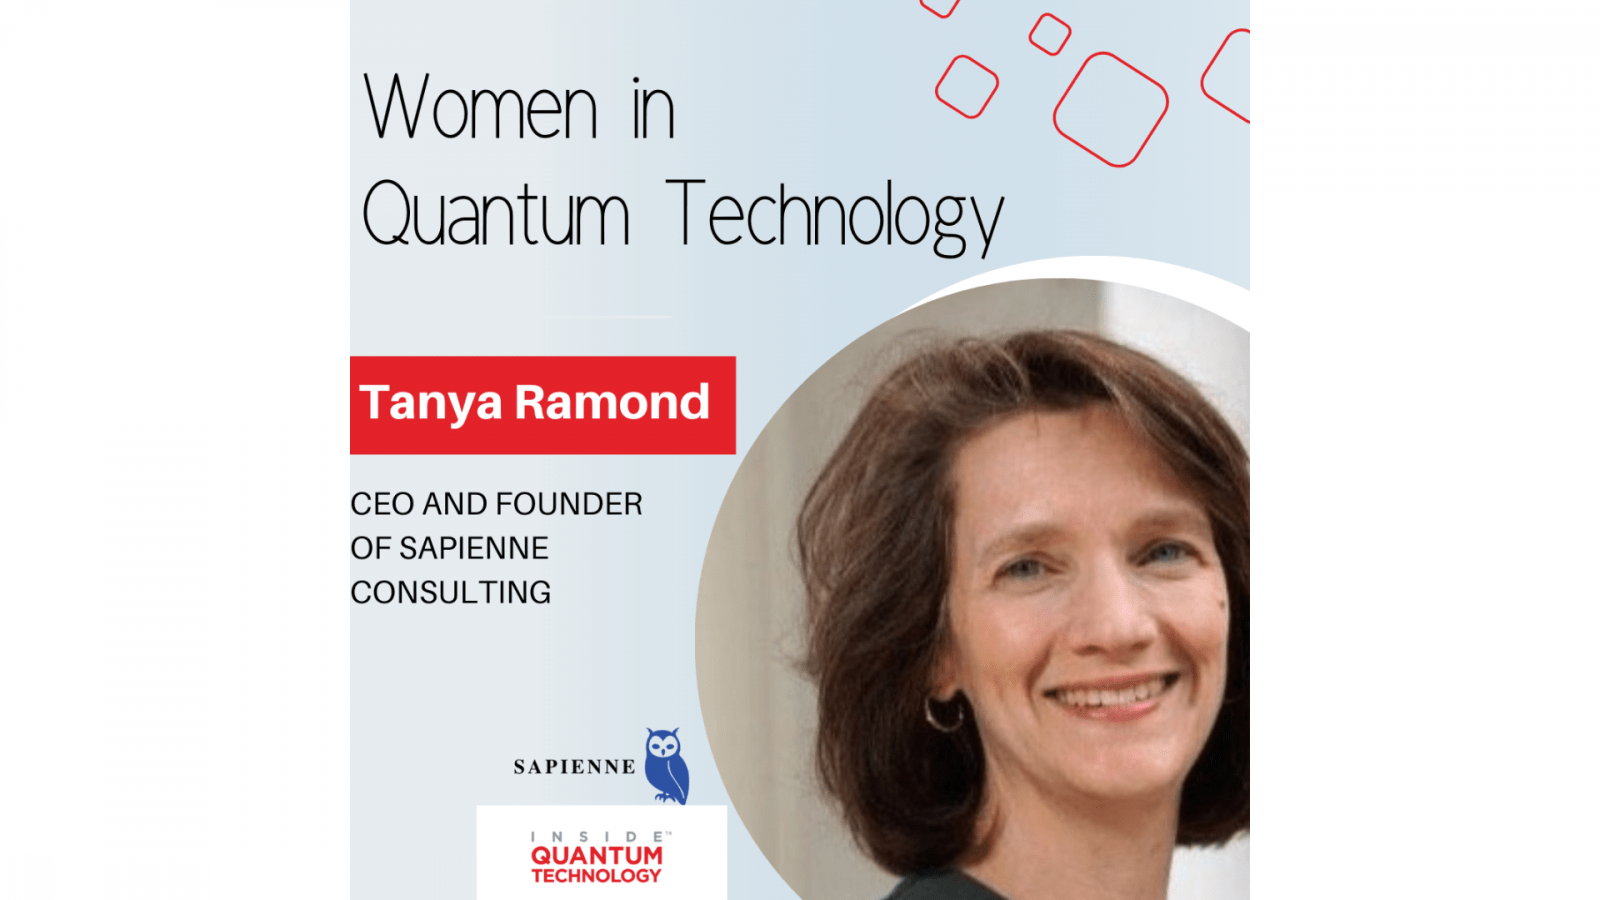 Sapienne Consulting の CEO 兼創設者である Tanya Ramond が、彼女の歴史と量子産業への歩みについて語ります。